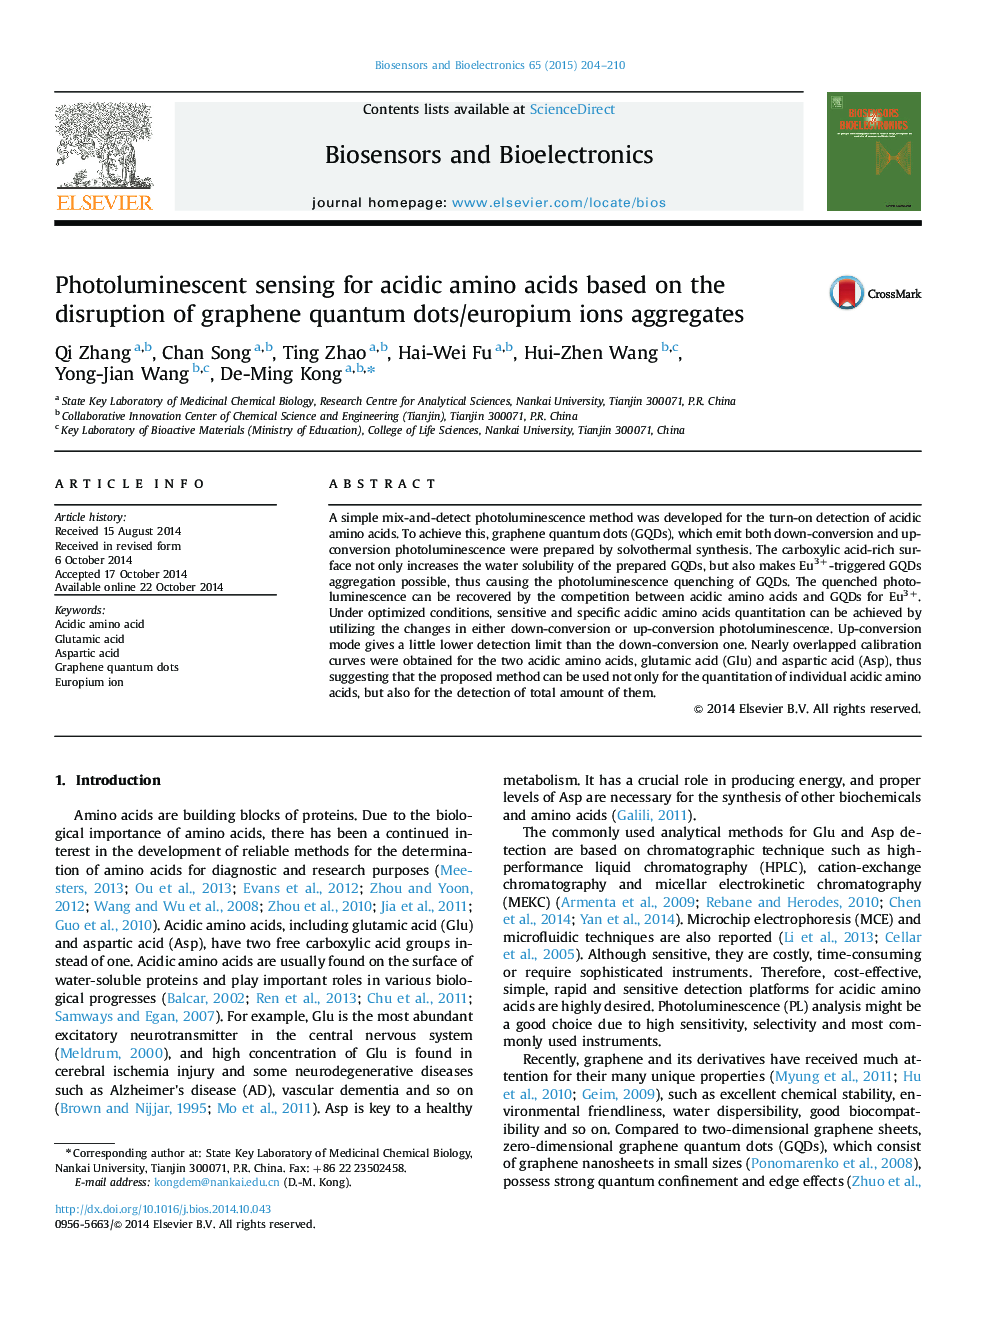 حسگر فوتولومینسانس برای اسیدهای آمینه اسیدی بر اساس اختلال نقاط کوانتومی گرافن / یون های یوروپیم 